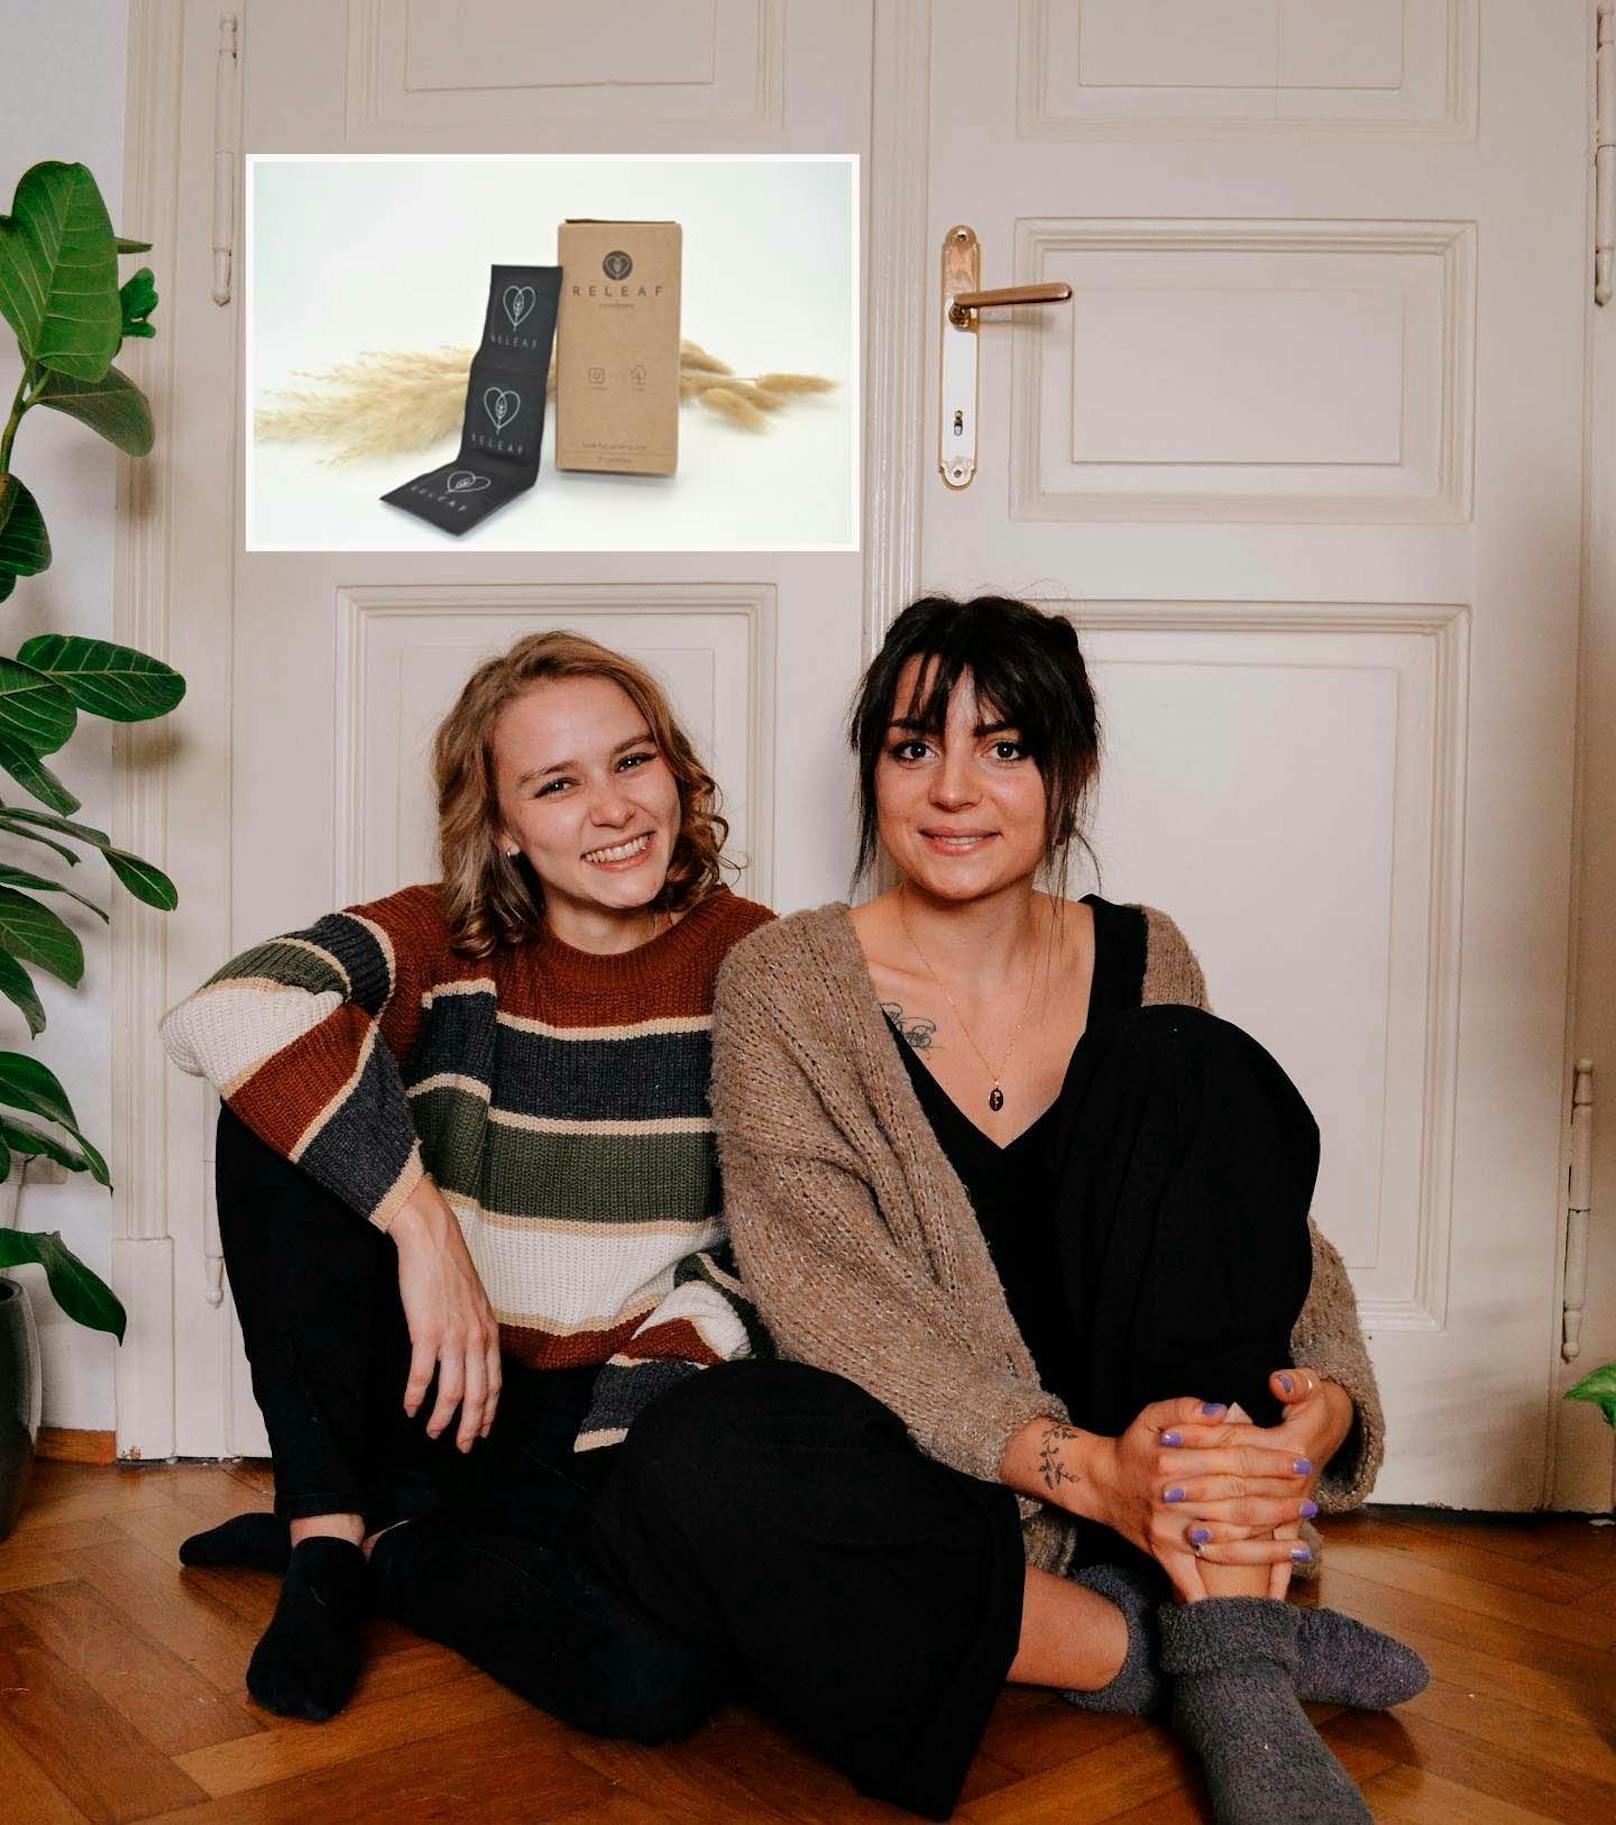 Die Grazer Studentinnen Katharina Muhr und Marlene Znopp haben den nachhaltigen Online-Shop "Minimali" gegründet.